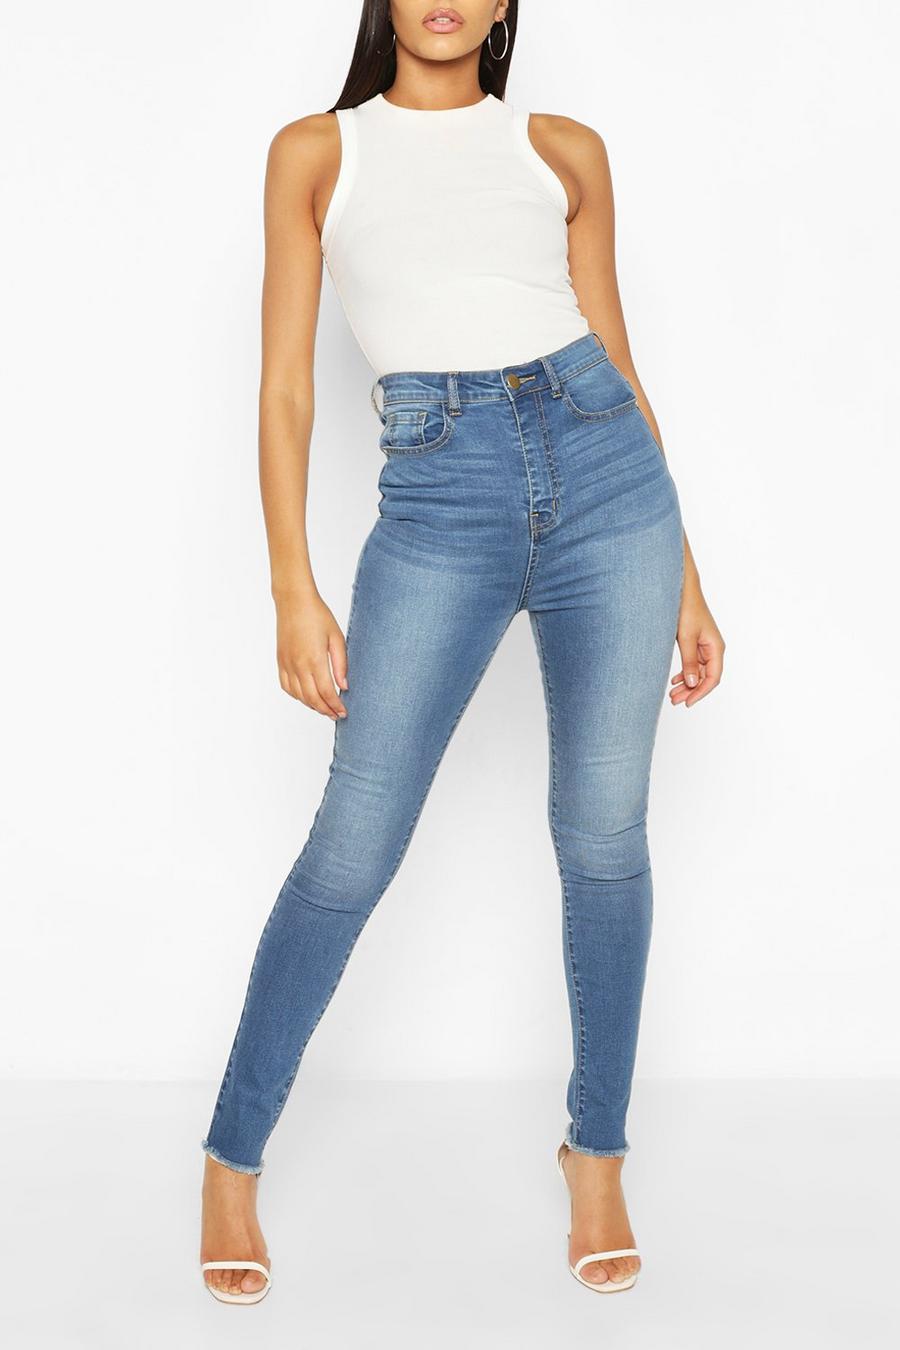 כחול ביניים סקיני ג'ינס עם הרמת ישבן לנשים גבוהות image number 1